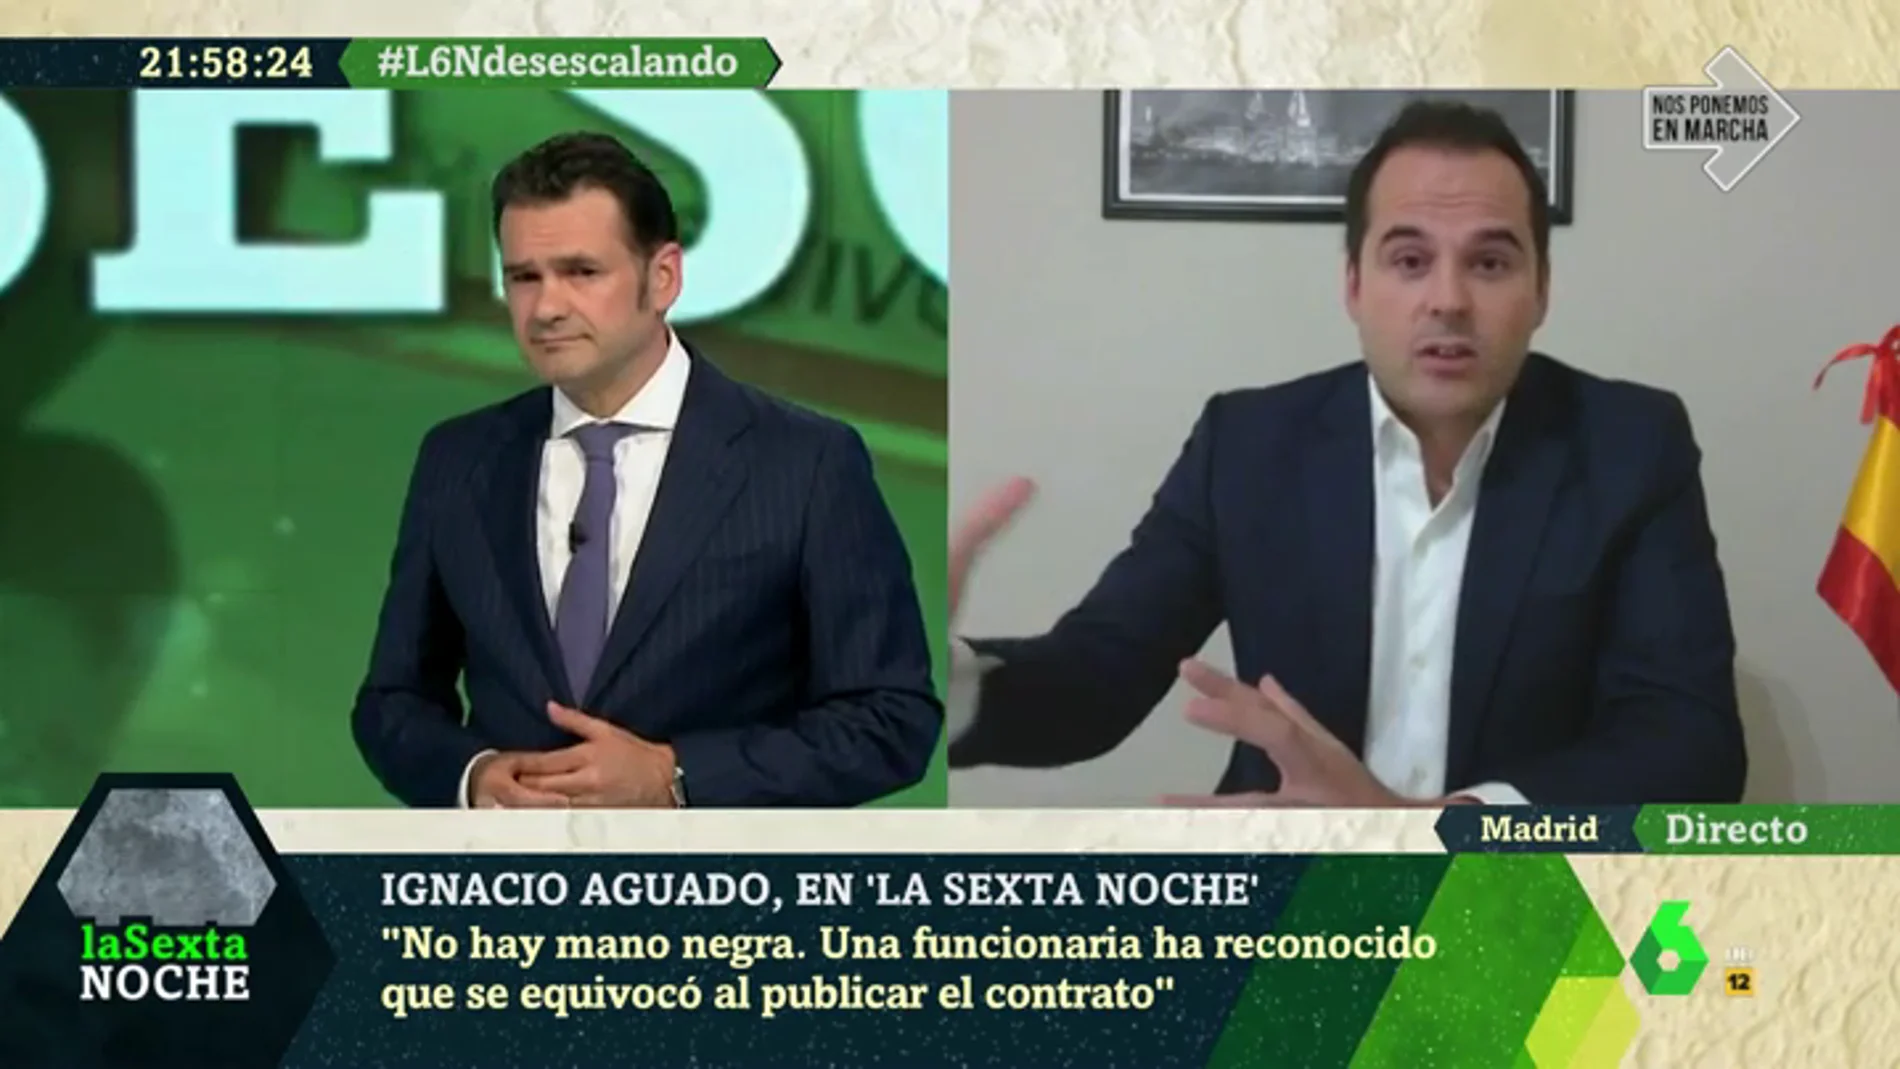 Ignacio Aguado: "A Podemos les da igual que pasemos de un modelo económico basado en salarios a uno basado en subsidios"